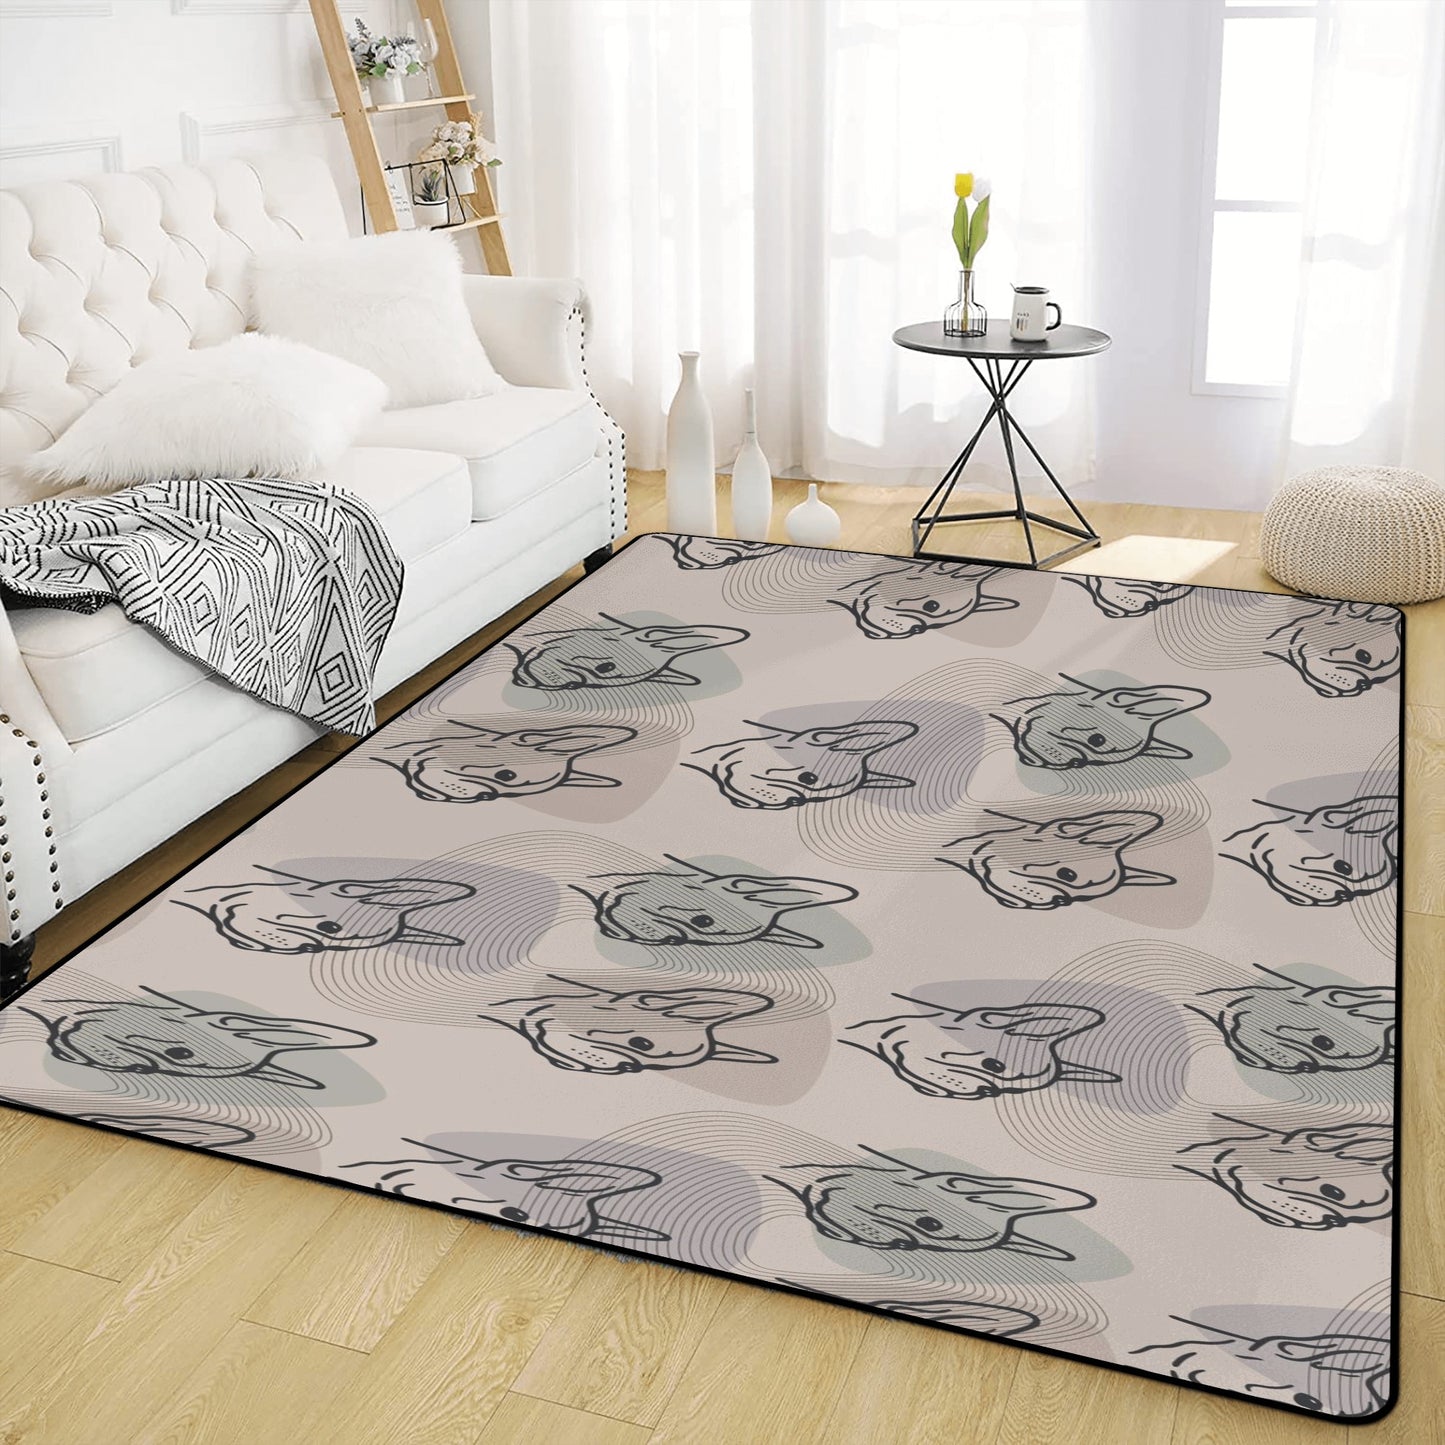 Gus - Living Room Carpet Rug